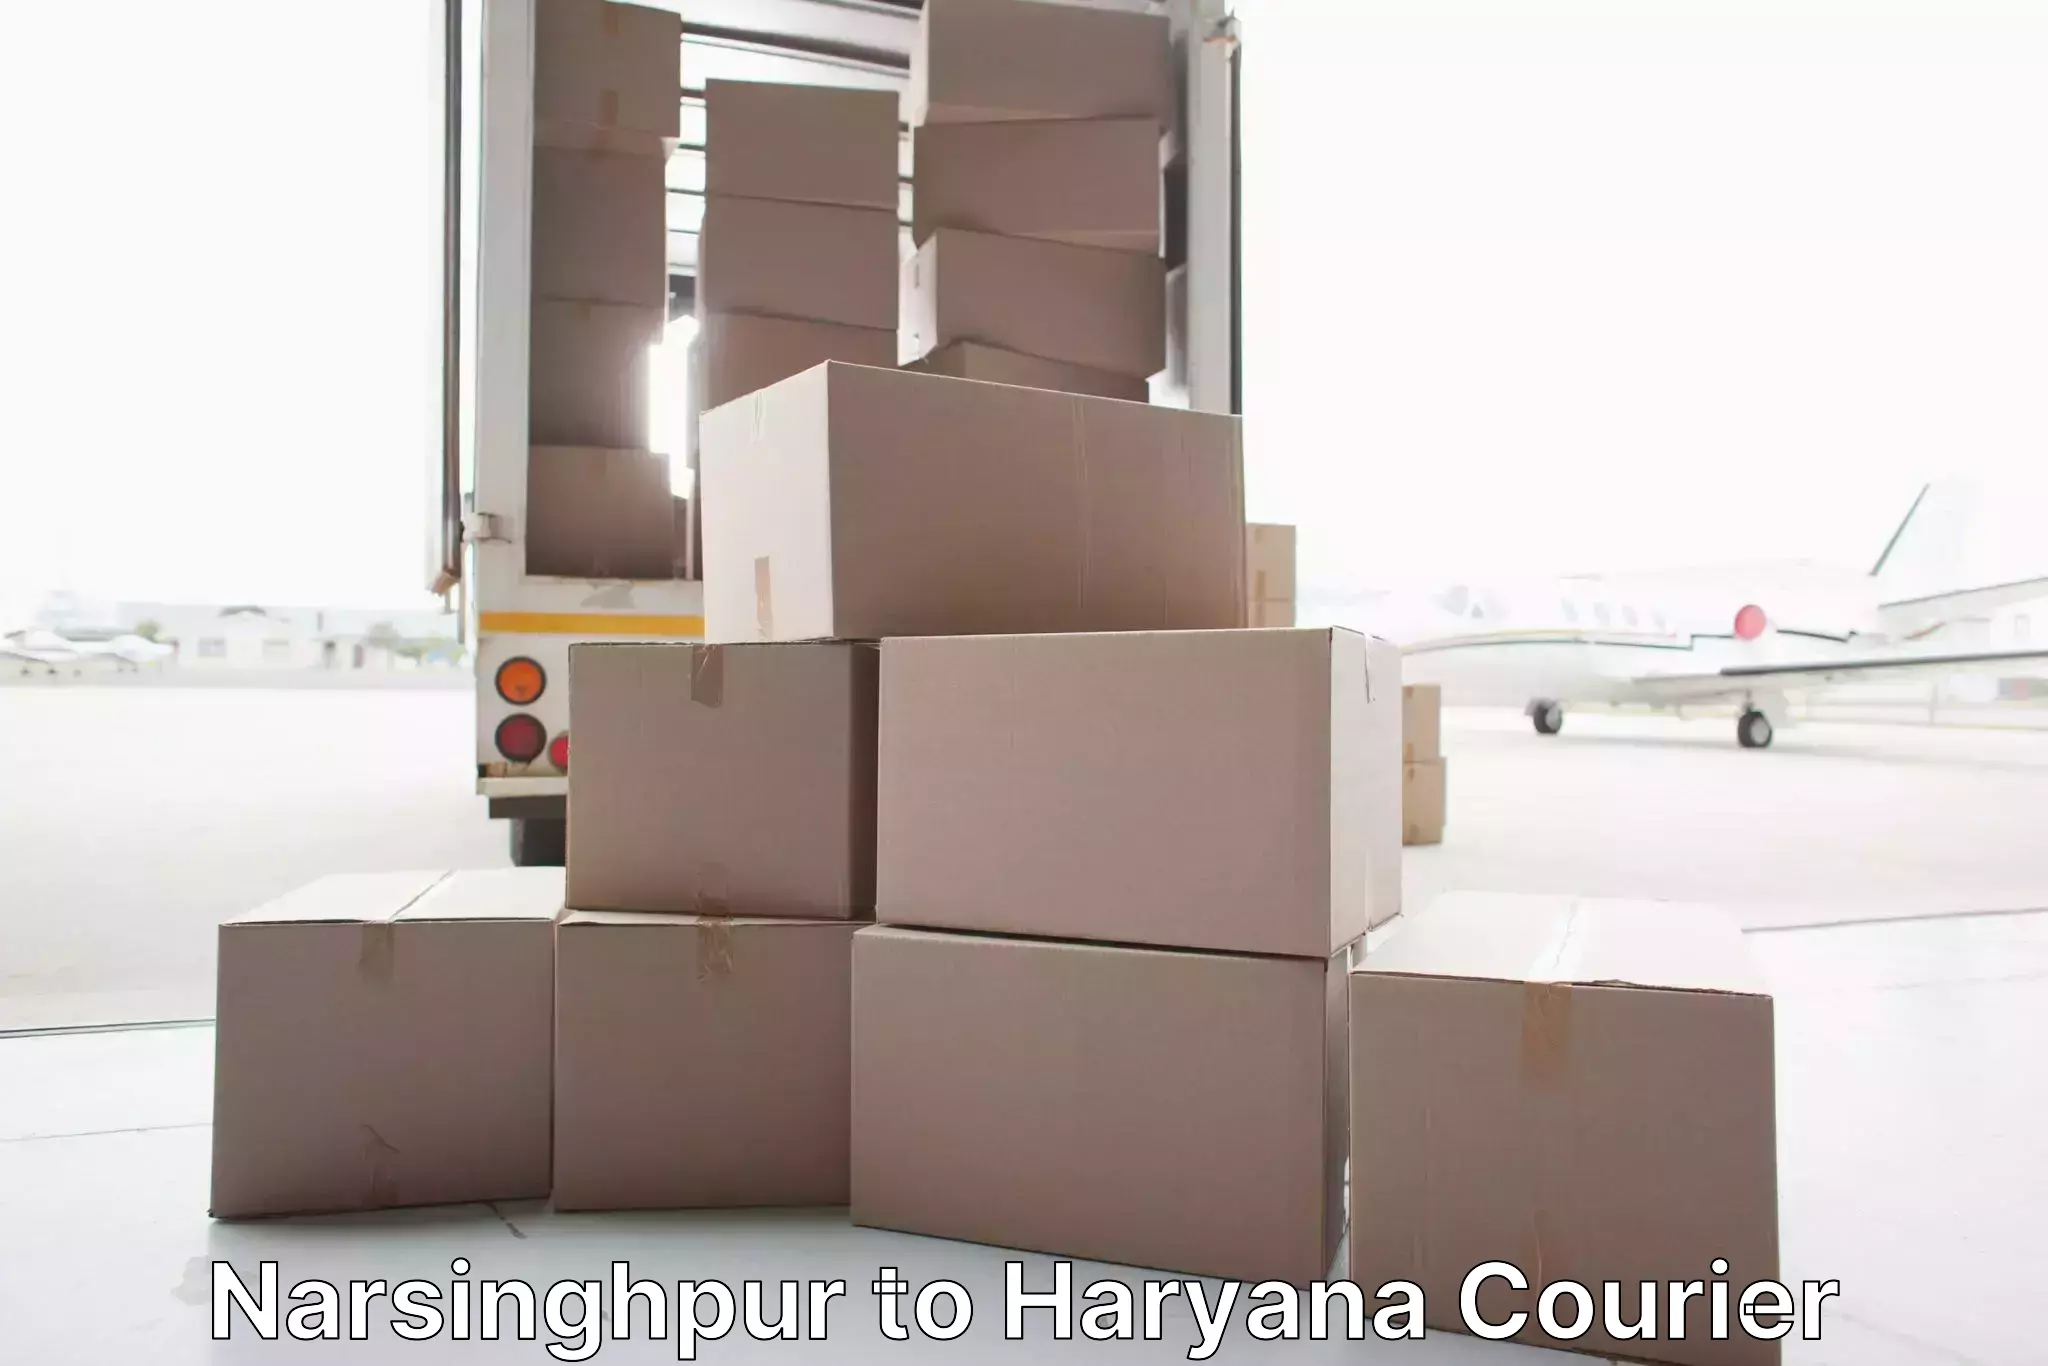 Furniture transport and storage in Narsinghpur to Hansi